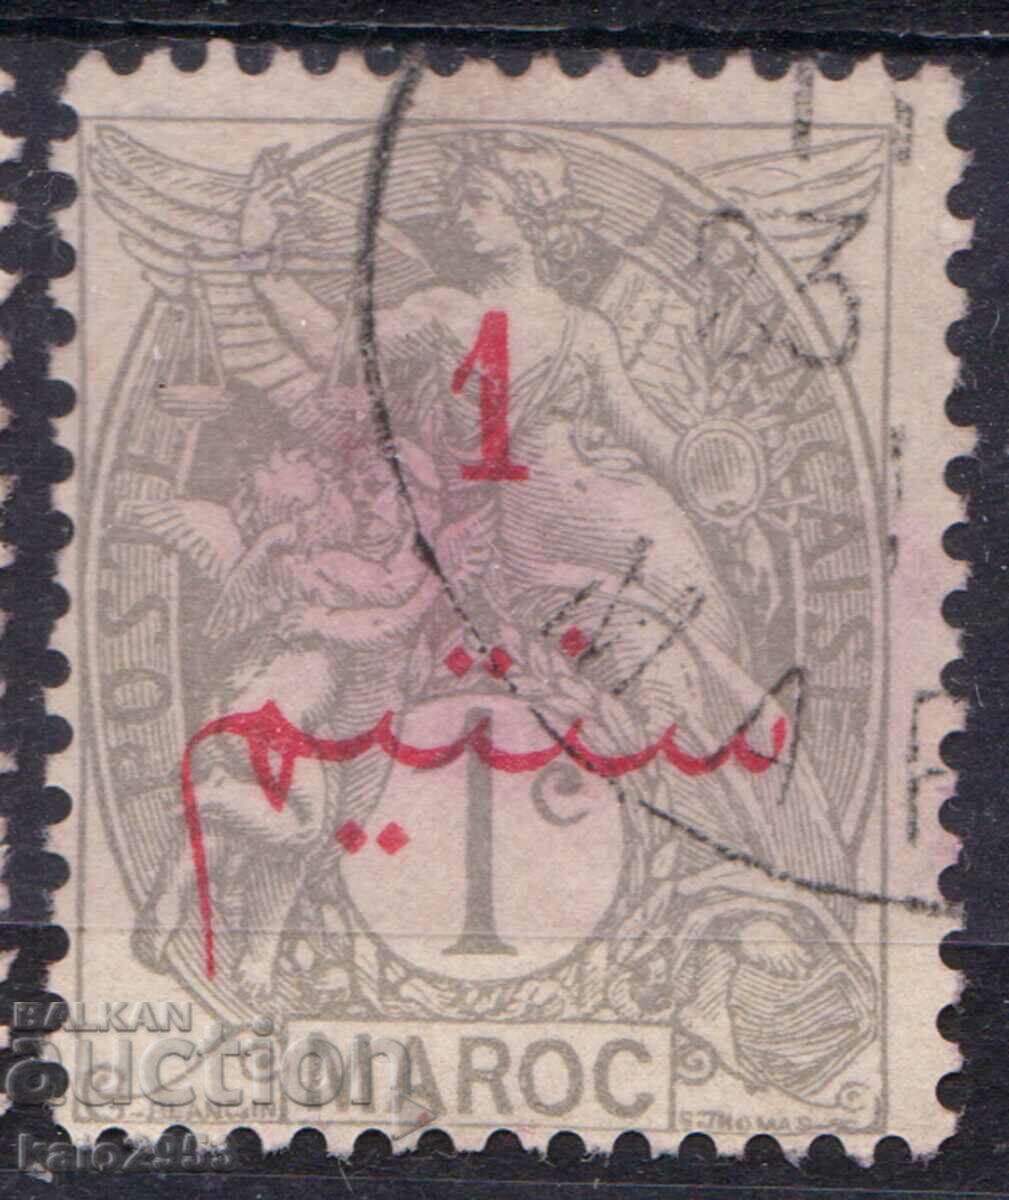 Oficiul poștal francez Maroc-1911-Superscris în arabă în/out Alegorie, timbru poștal